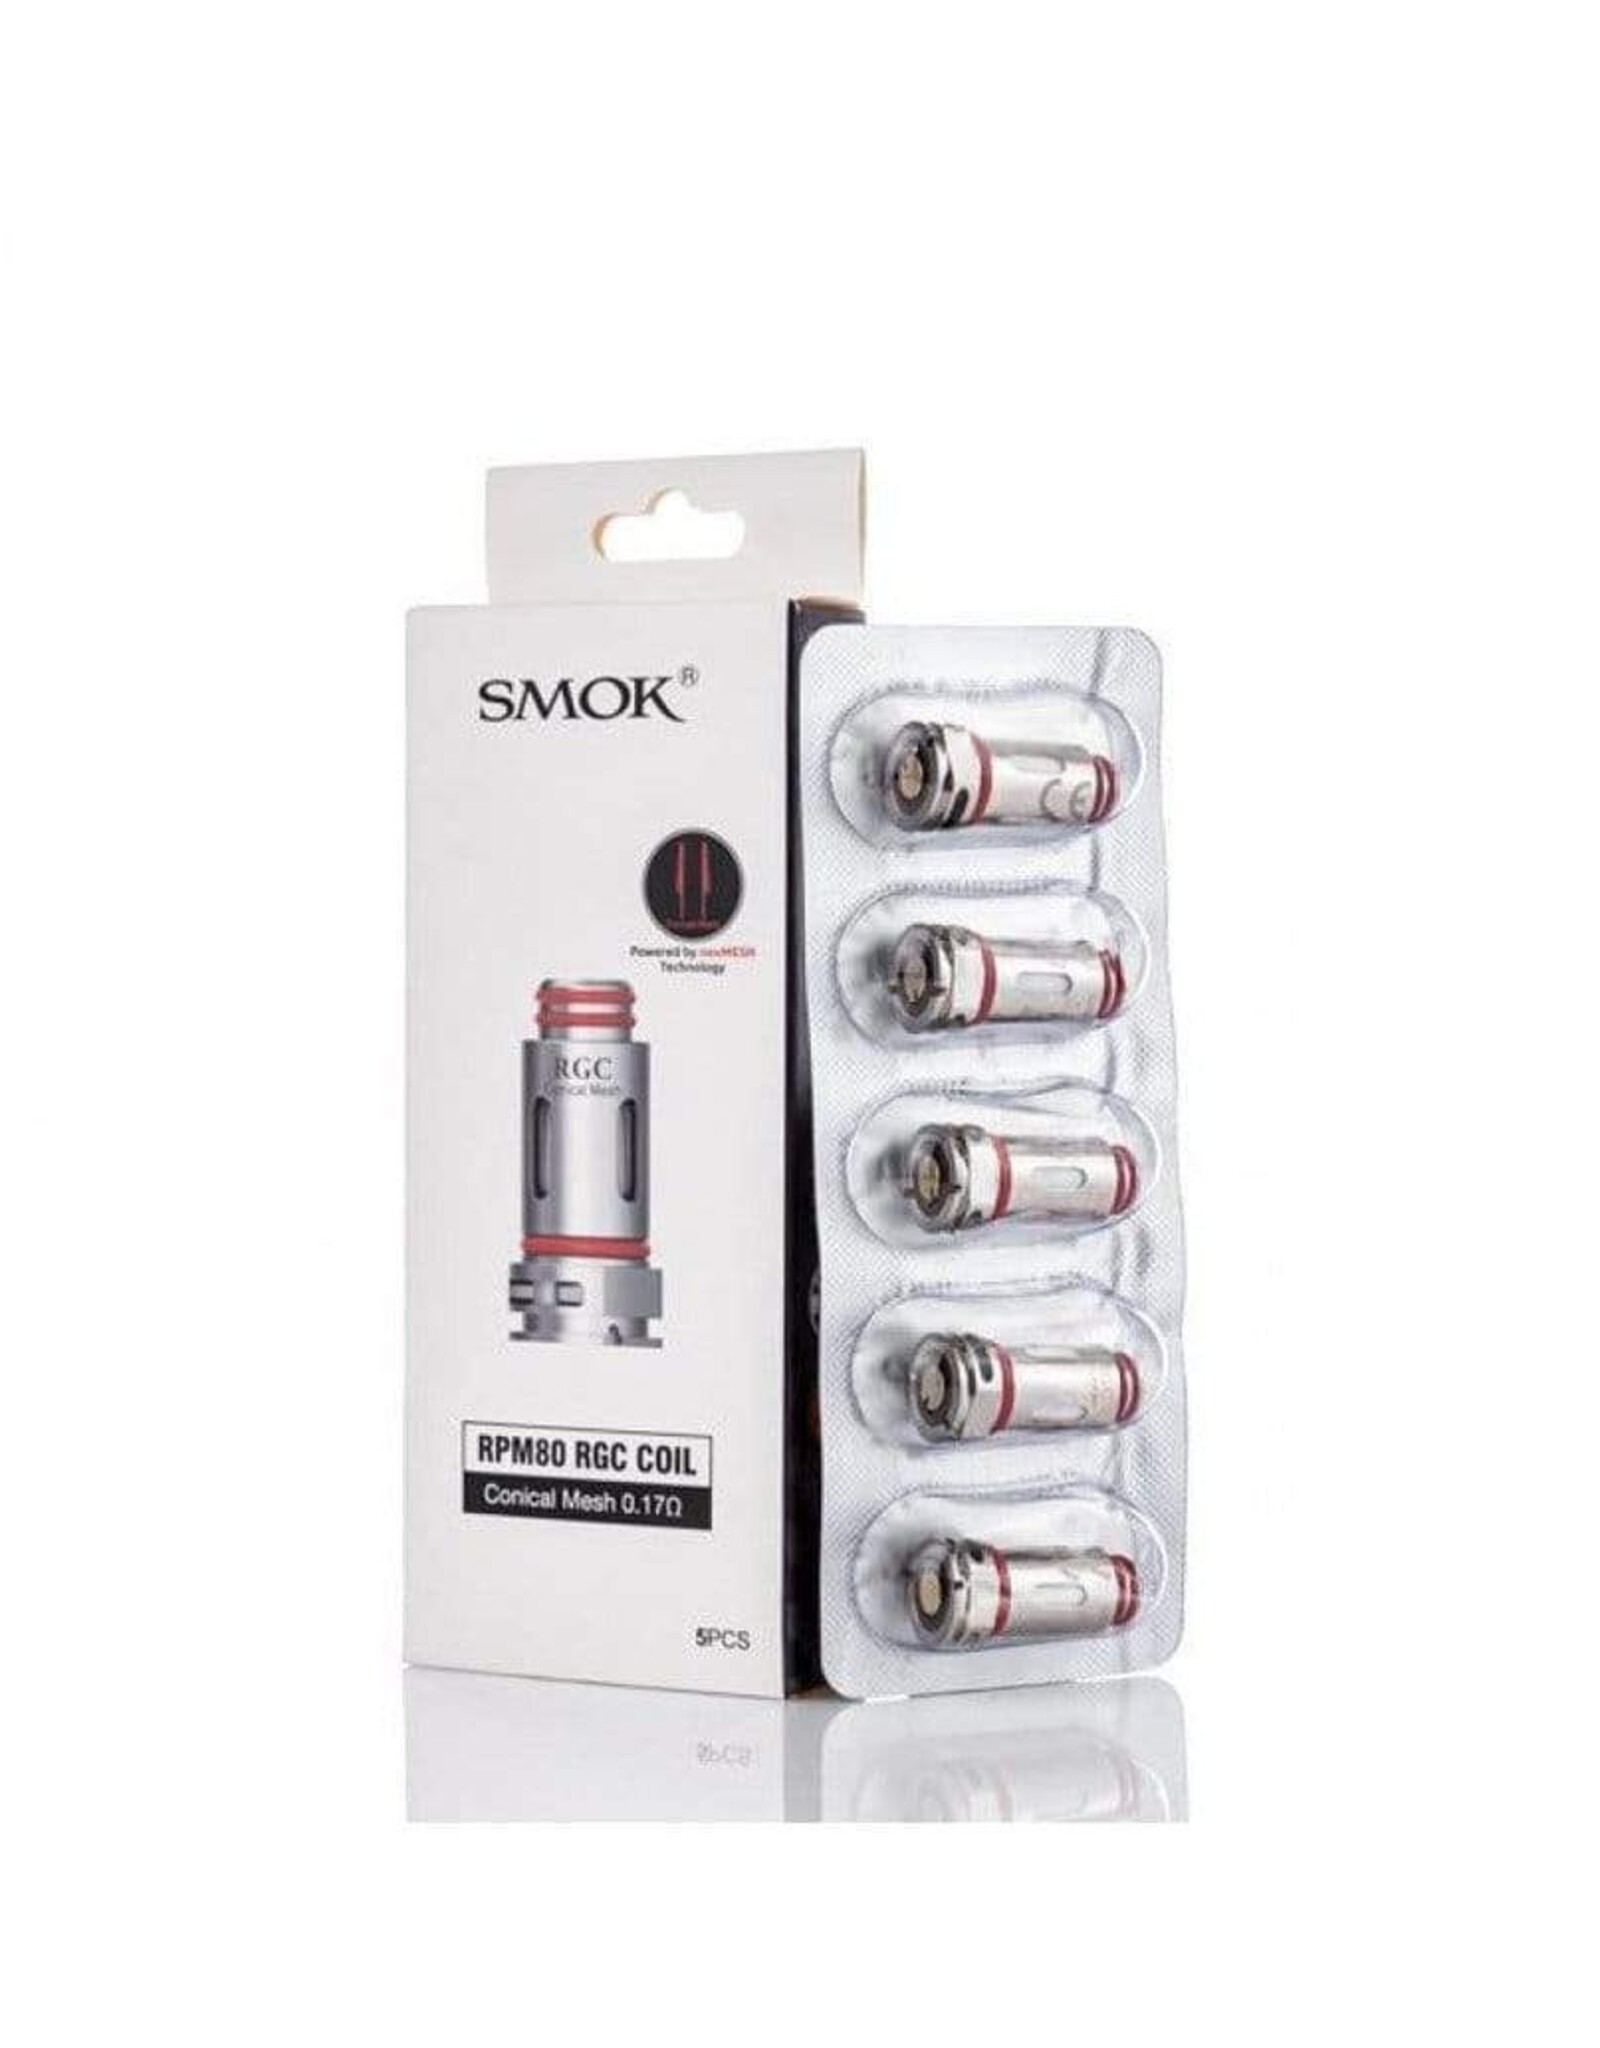 SMOK SMOK RPM80 COIL 0.17